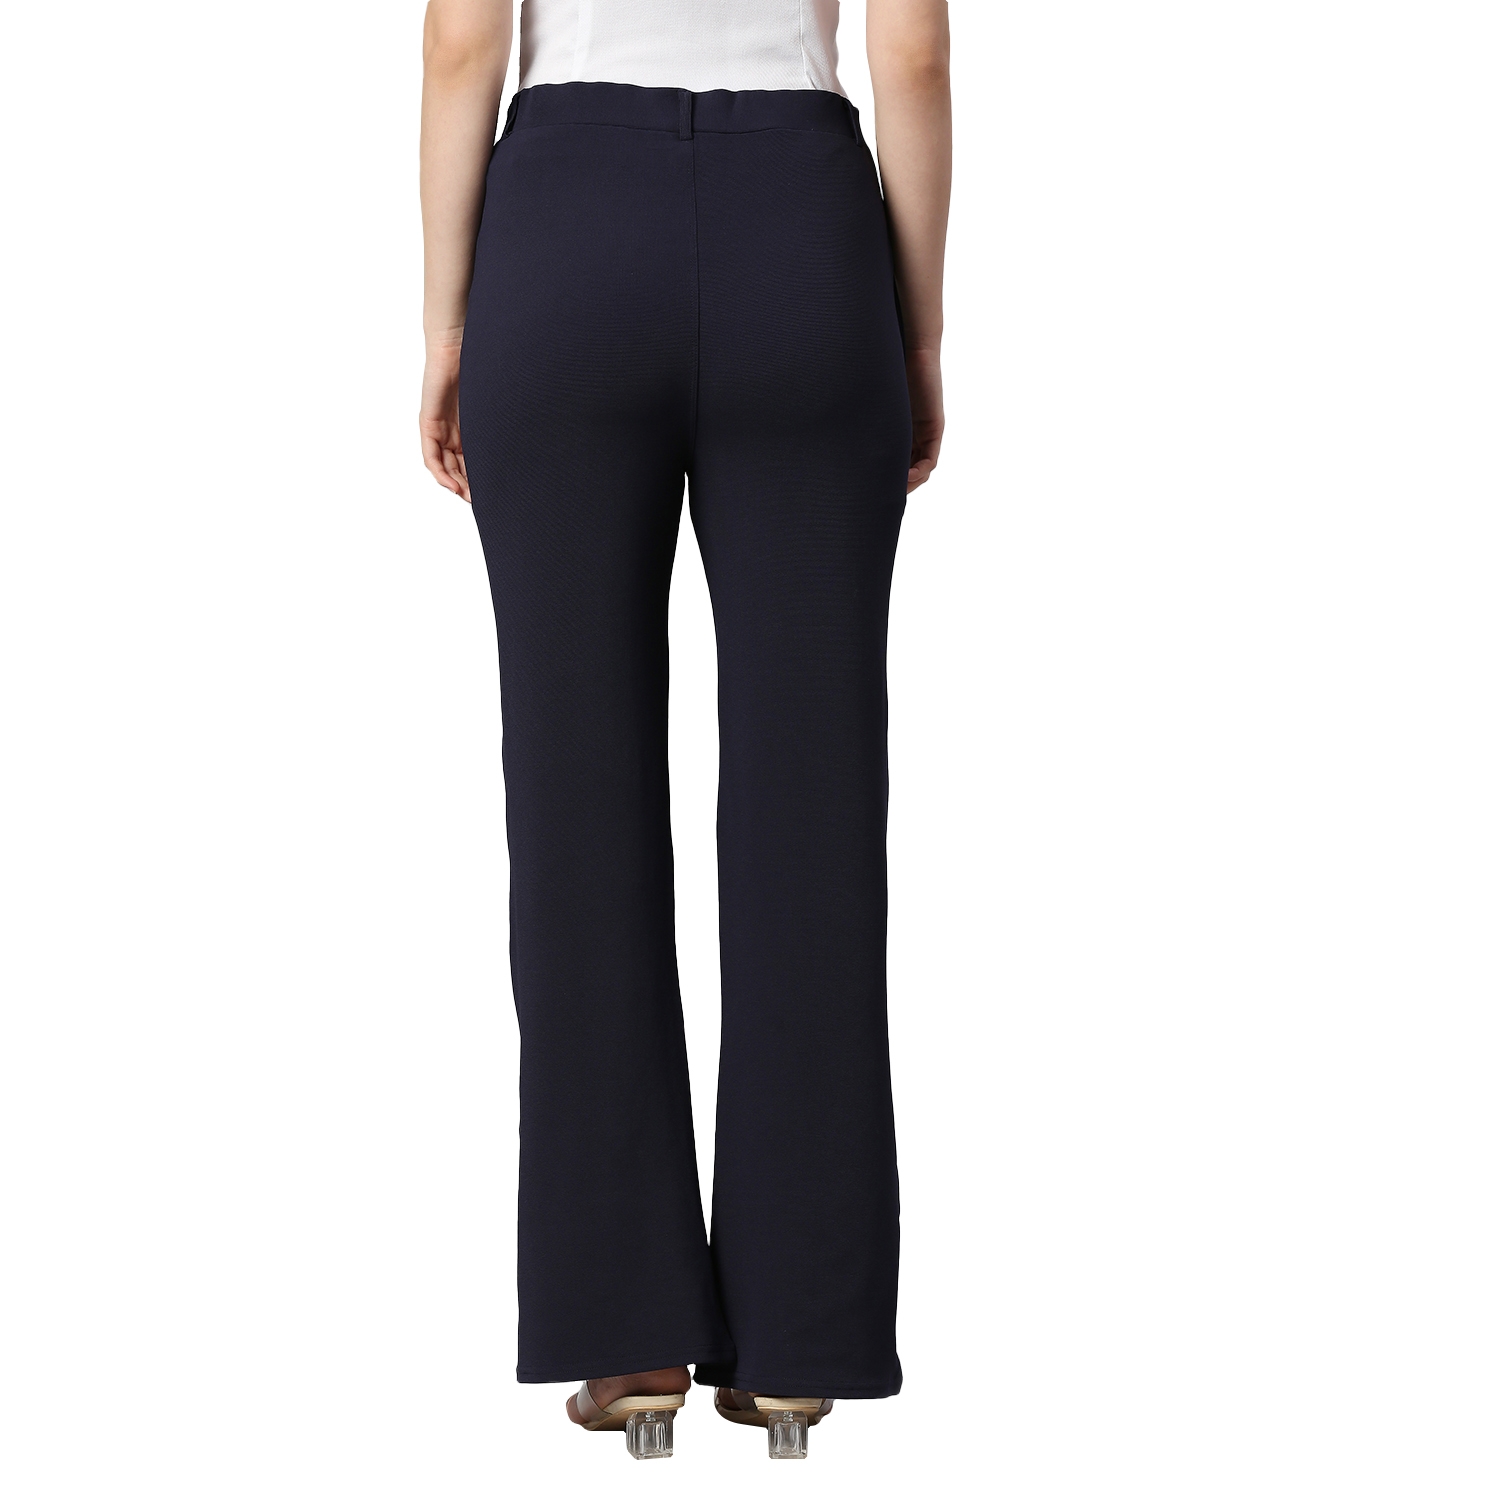 Shahin Mannan Bell Bottom Pant | Black, Japanese Crepe, Sheer Sleeve Inner  | Pants for women, Bell bottom pants, Fashion